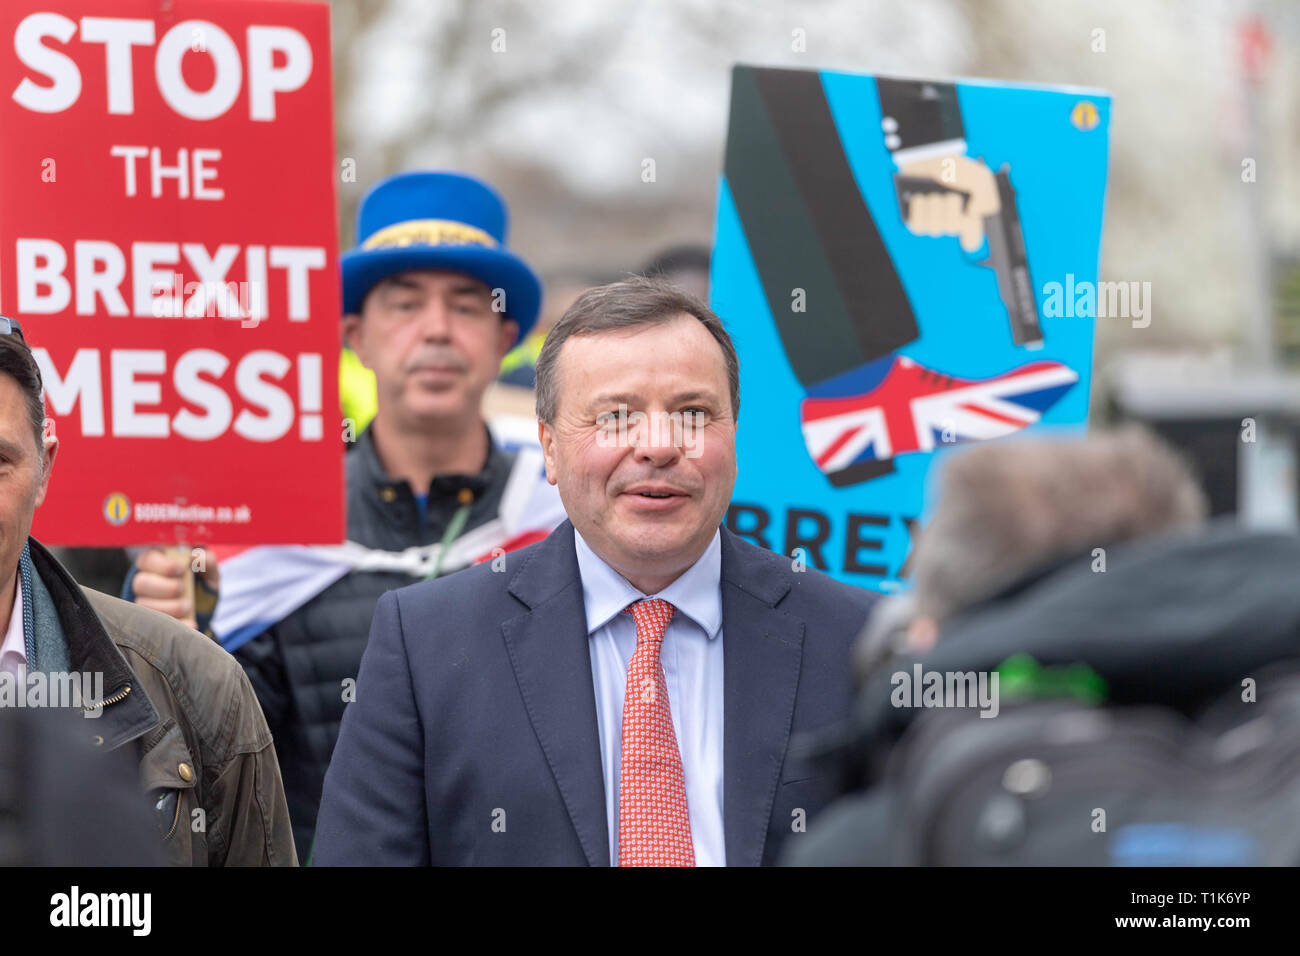 27 mars 2019 Londres, Arron Banques, Co fondateur de quitter l'UE, sur College Green poursuivis par les manifestants Brexit Ian Davidson Crédit/Alamy Live News Banque D'Images